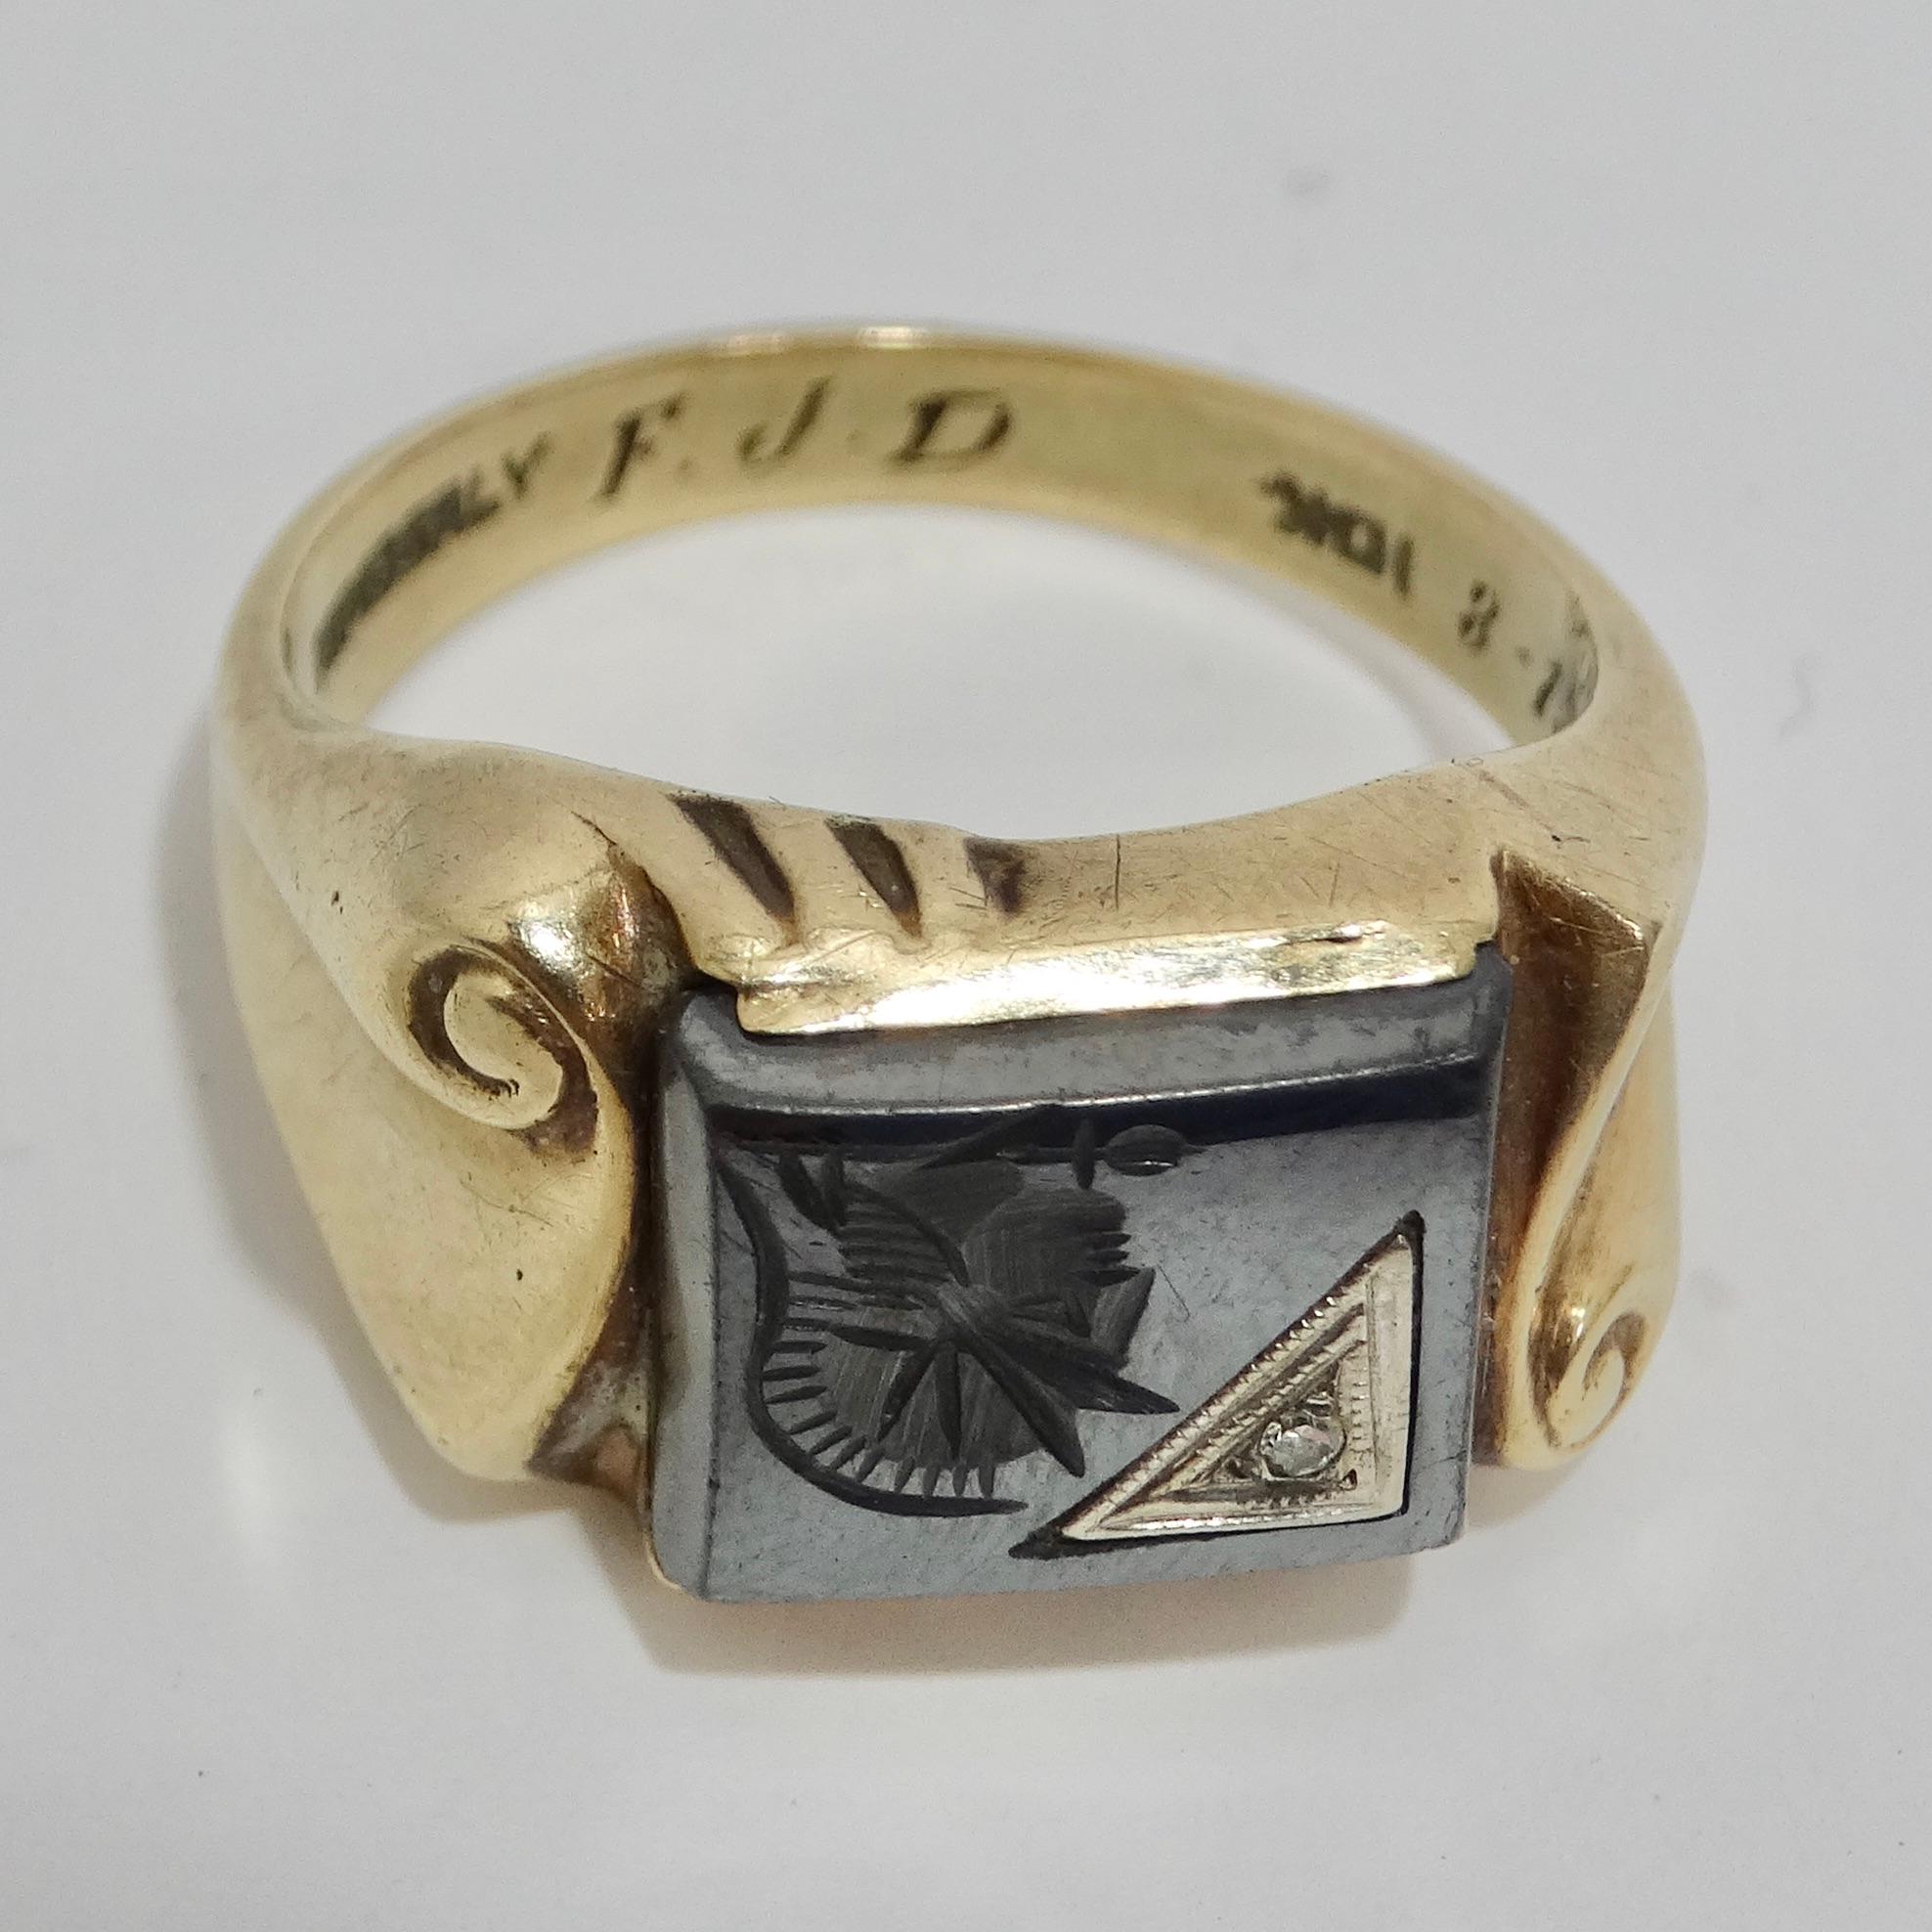 Der 10K Gold 1960s Diamond Onyx Roman Soldier Ring ist ein atemberaubender Statement-Ring, der die Kunstfertigkeit und Eleganz der 1960er Jahre verkörpert. Dieser exquisite Ring besteht aus einem Band aus 10-karätigem Gelbgold, einem fesselnden